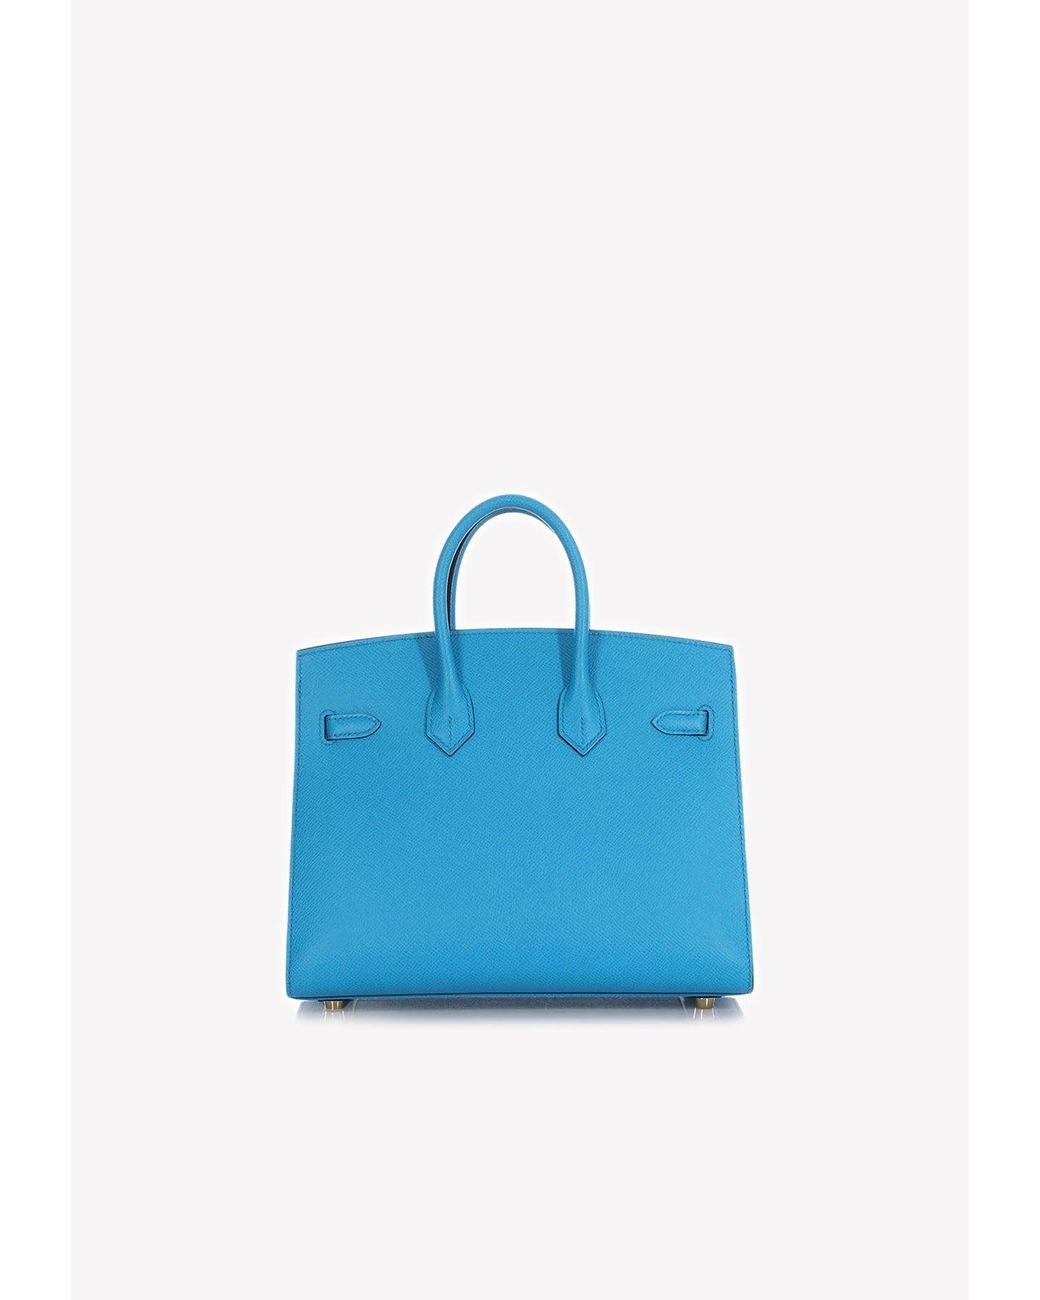 Hermes Birkin Handbag Bleu Nuit Swift with Rose Gold Hardware 25 Blue